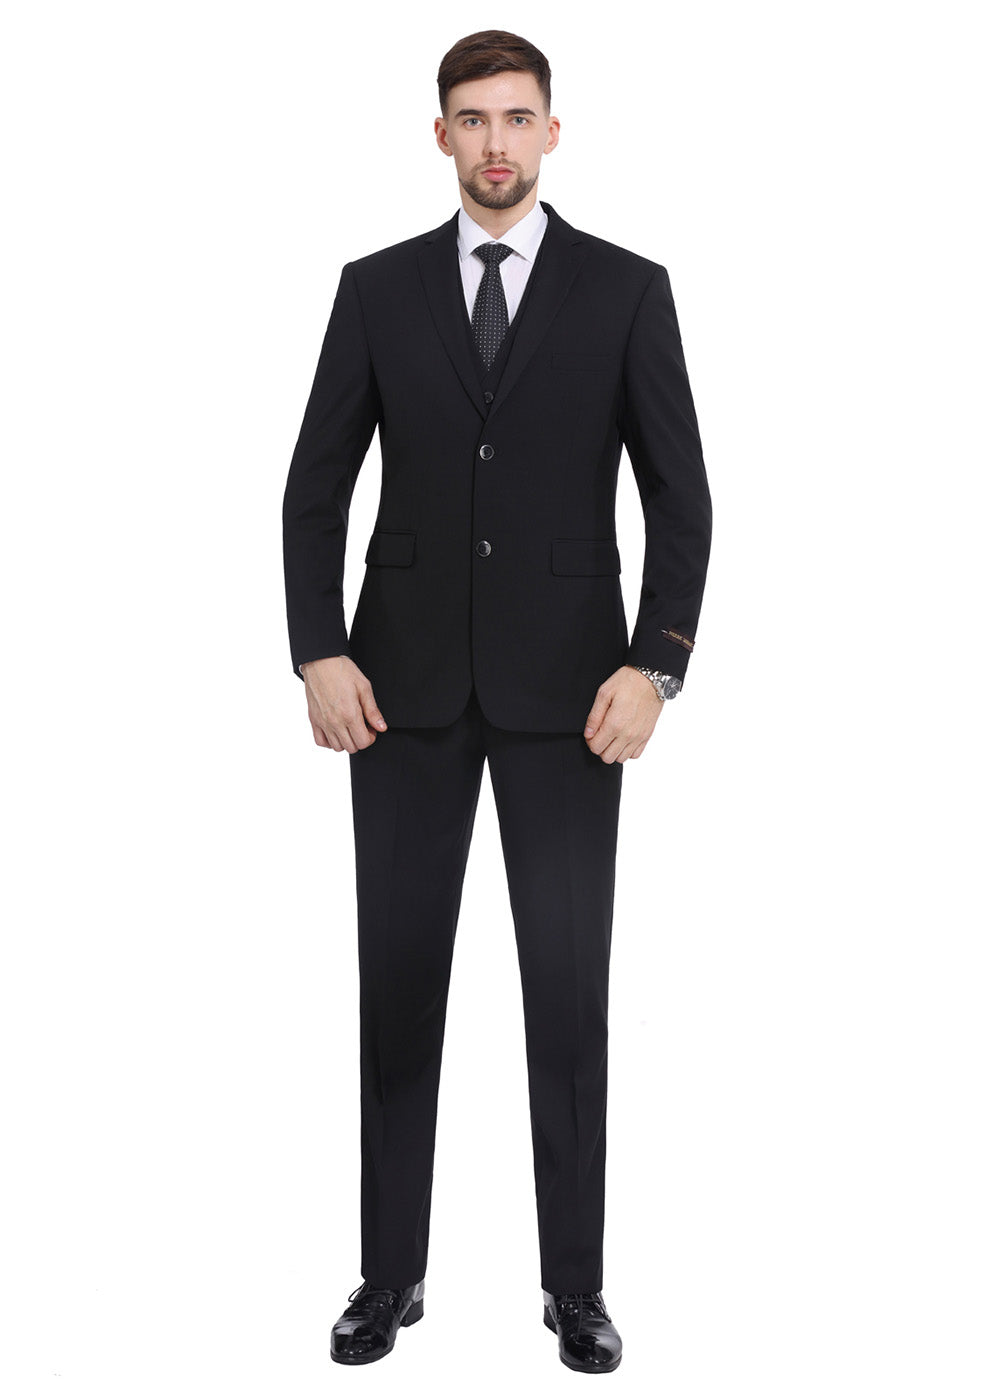 Men's Suits Slim Fit, 3 Piece Suit for Men Tuxedo Suit Set